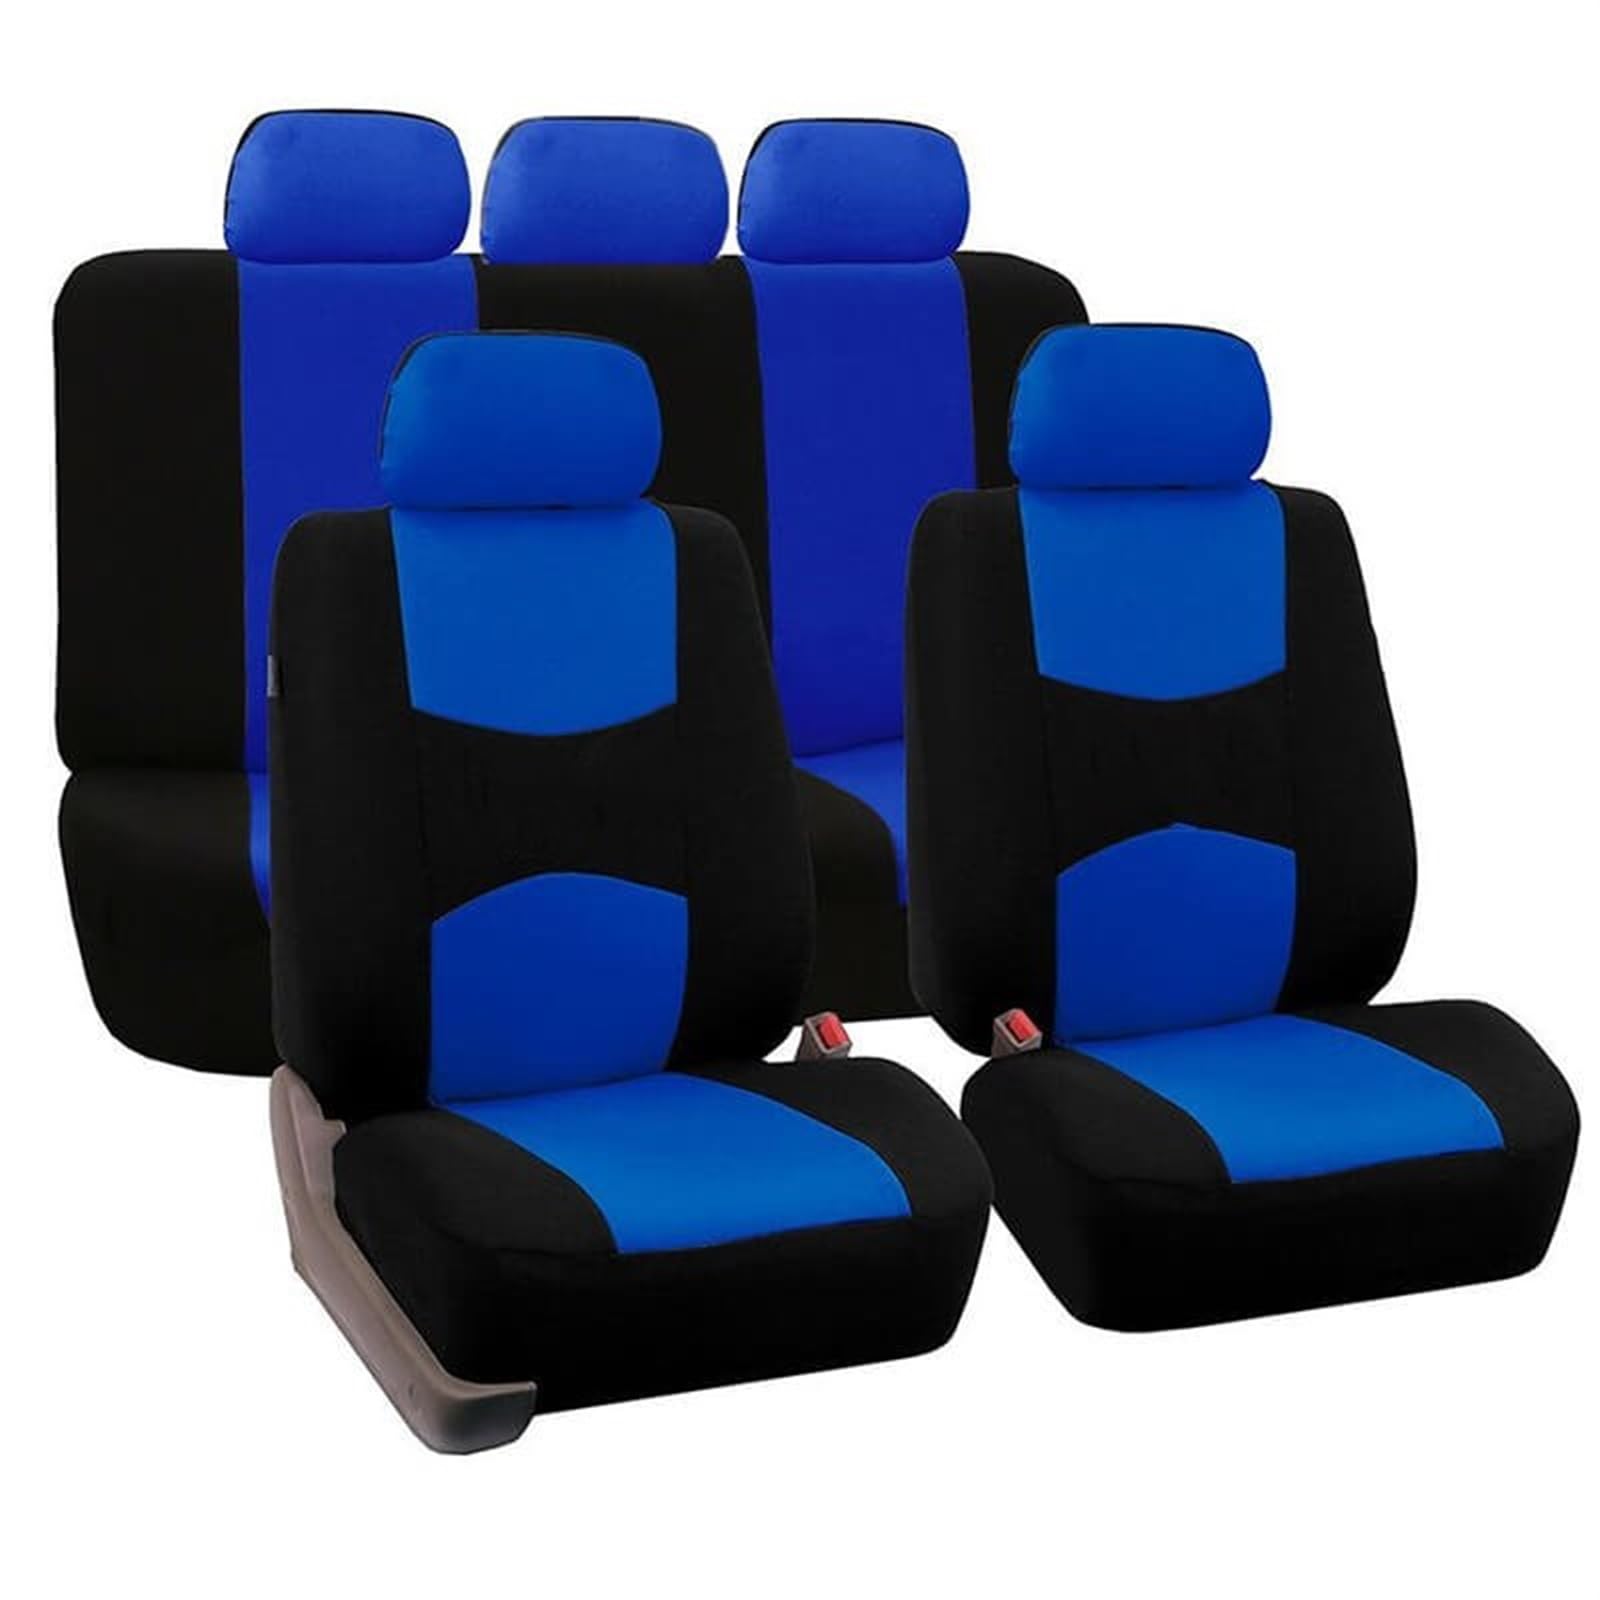 Sitzbezug Autositzbezüge Universal Autositzbezug Autositzschutzbezüge Damen Autoinnenausstattung (9 Farben) Sitzbezüge (Farbe : Blue (5 seat)) von KarDoL